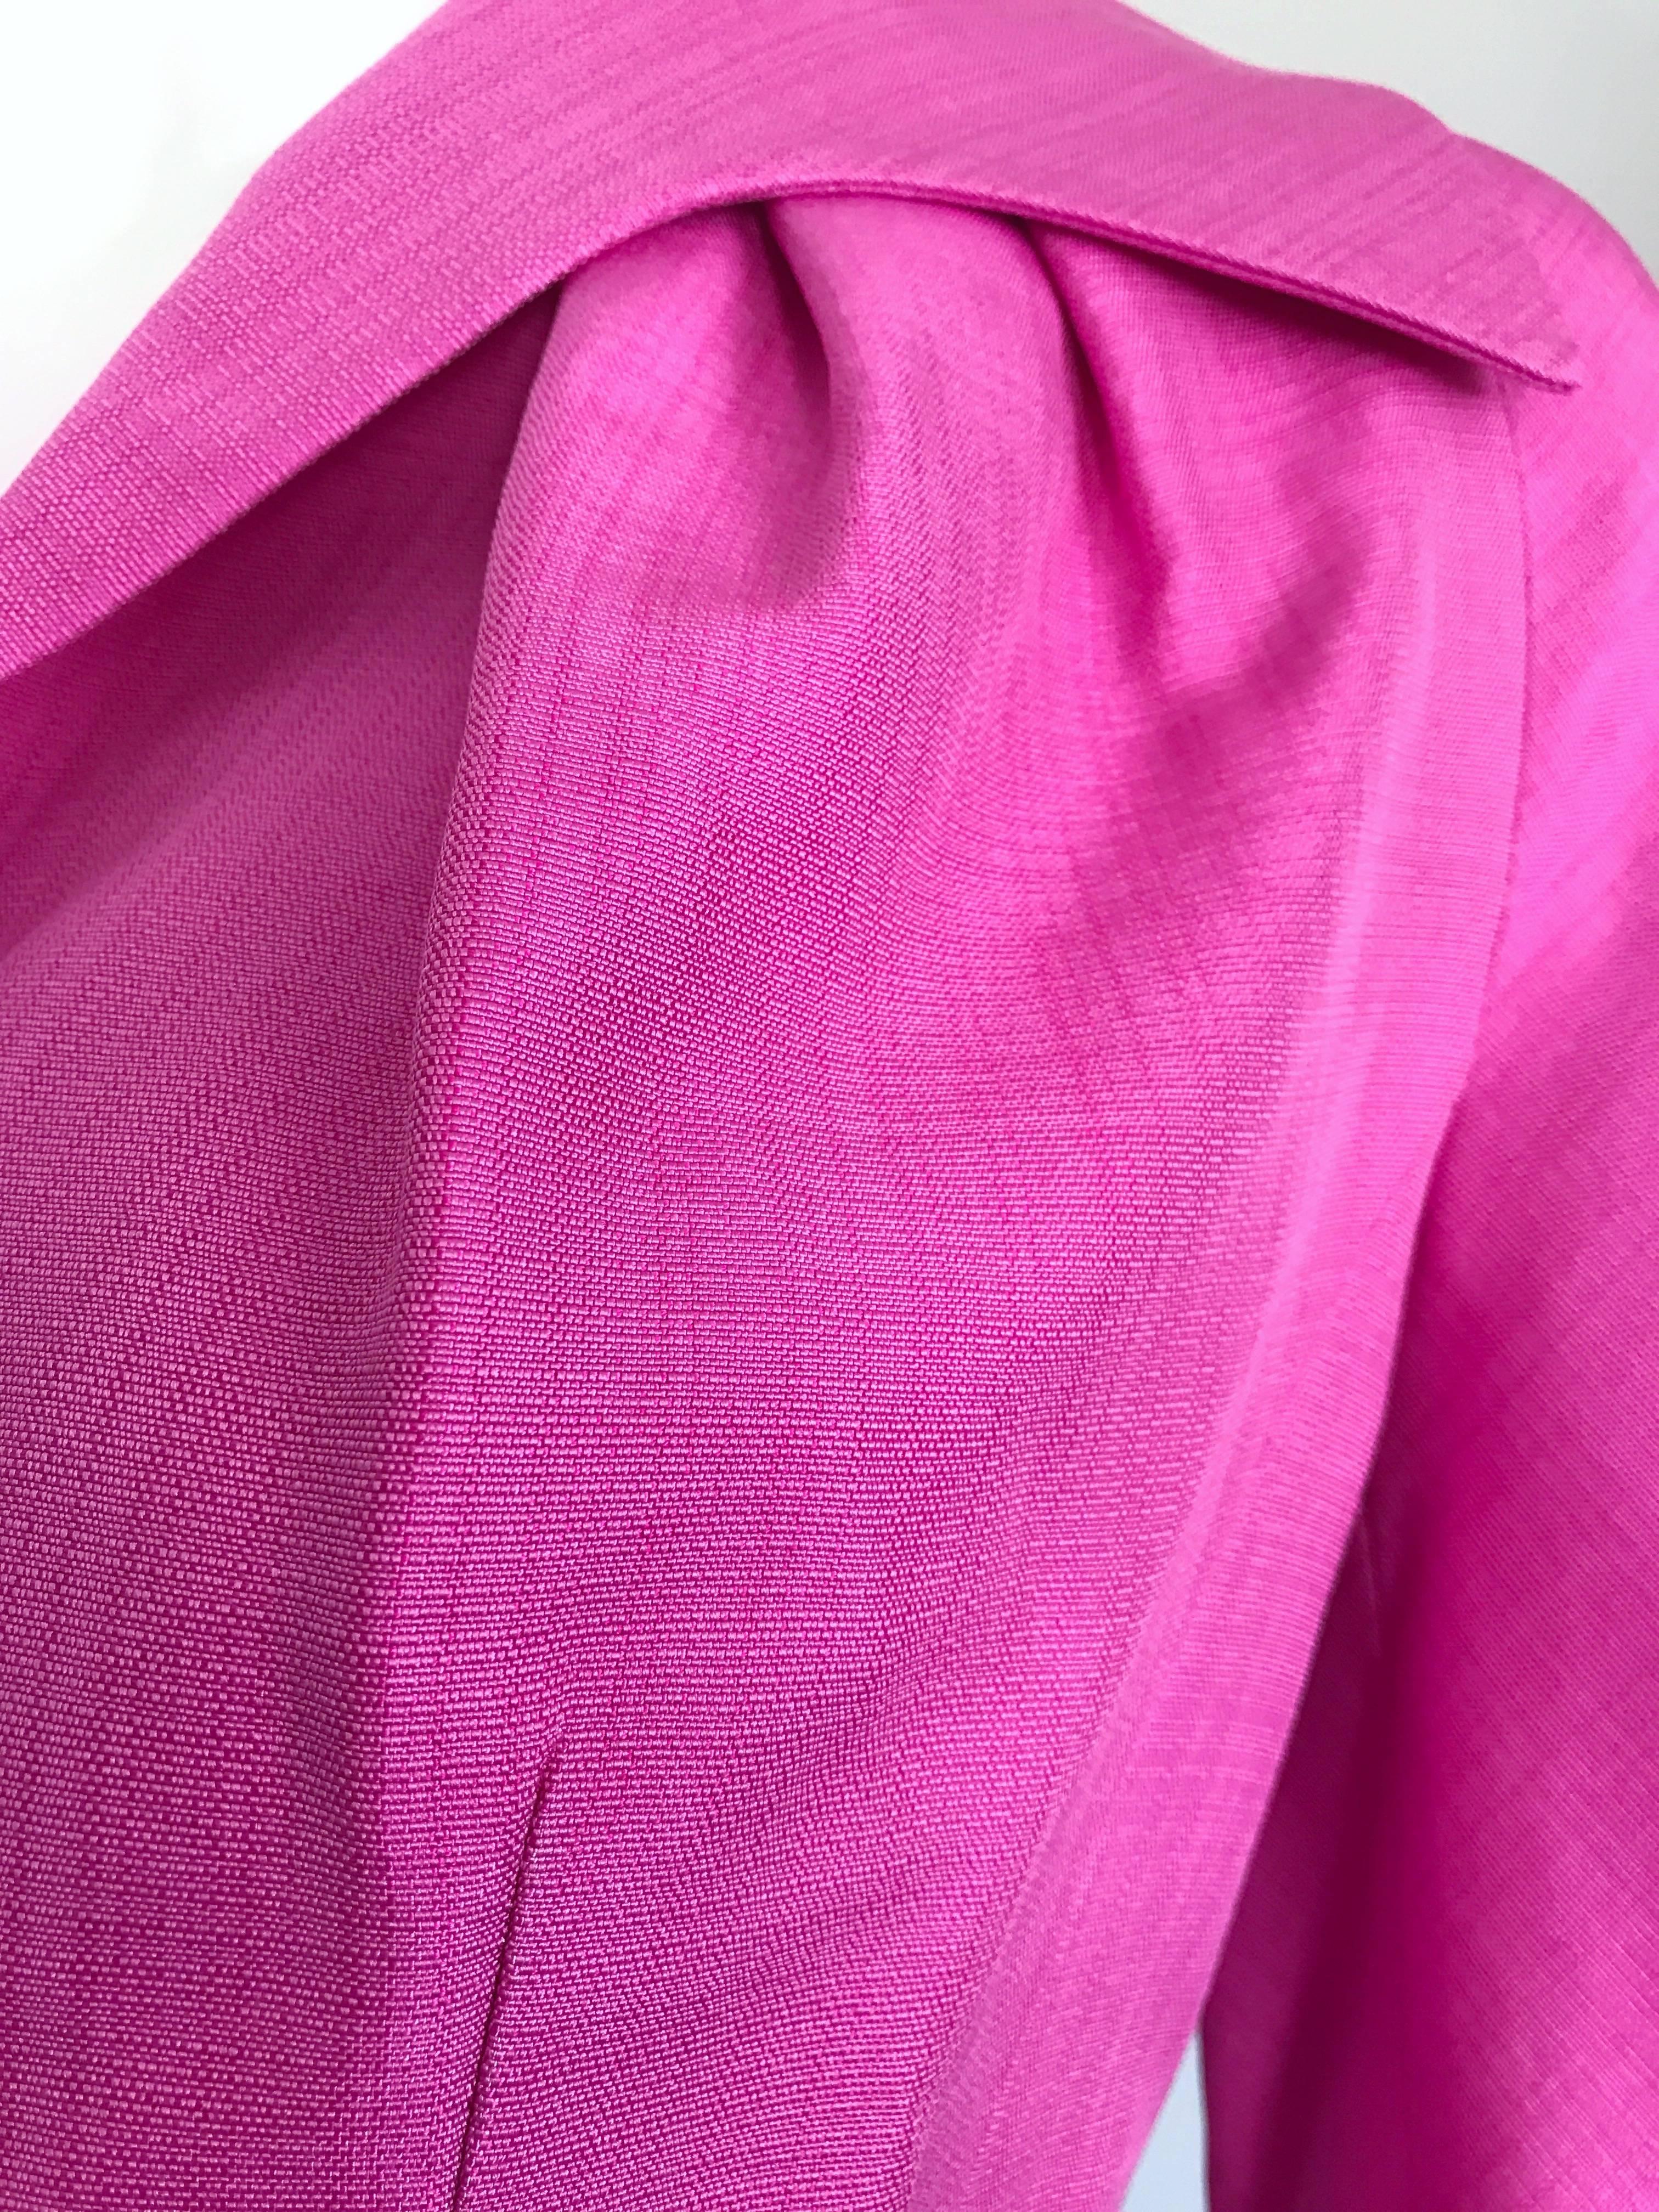 Christian Dior by John Galliano Größe 10 Rosa Jacke mit Gürtel aus Seidenmischung in Bambuloptik 1